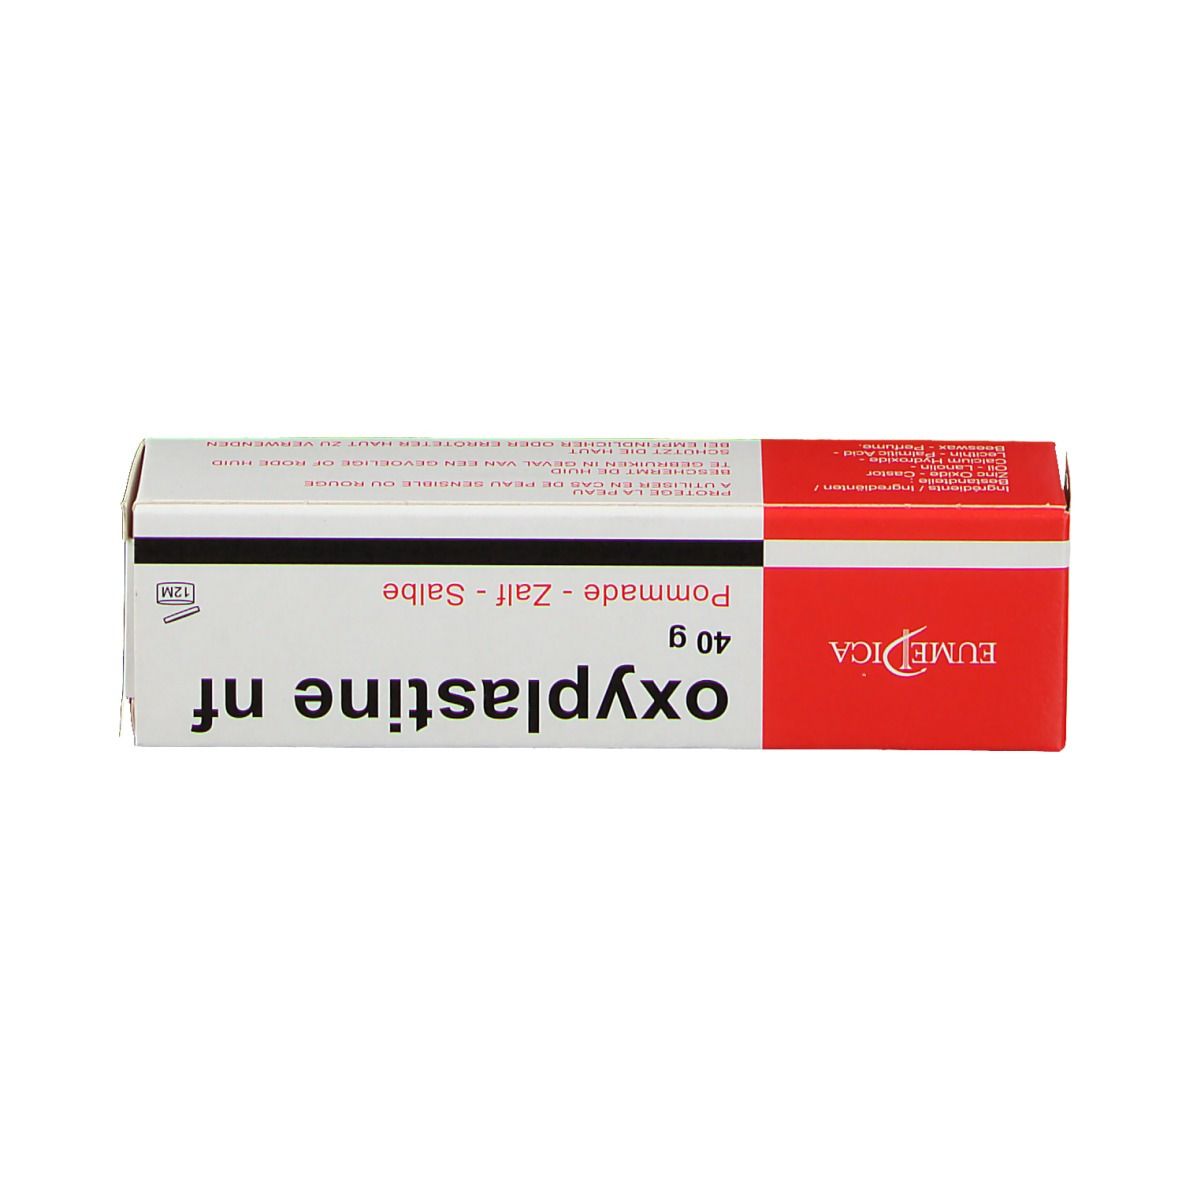 Oxyplastine 40 g - Redcare Pharmacie